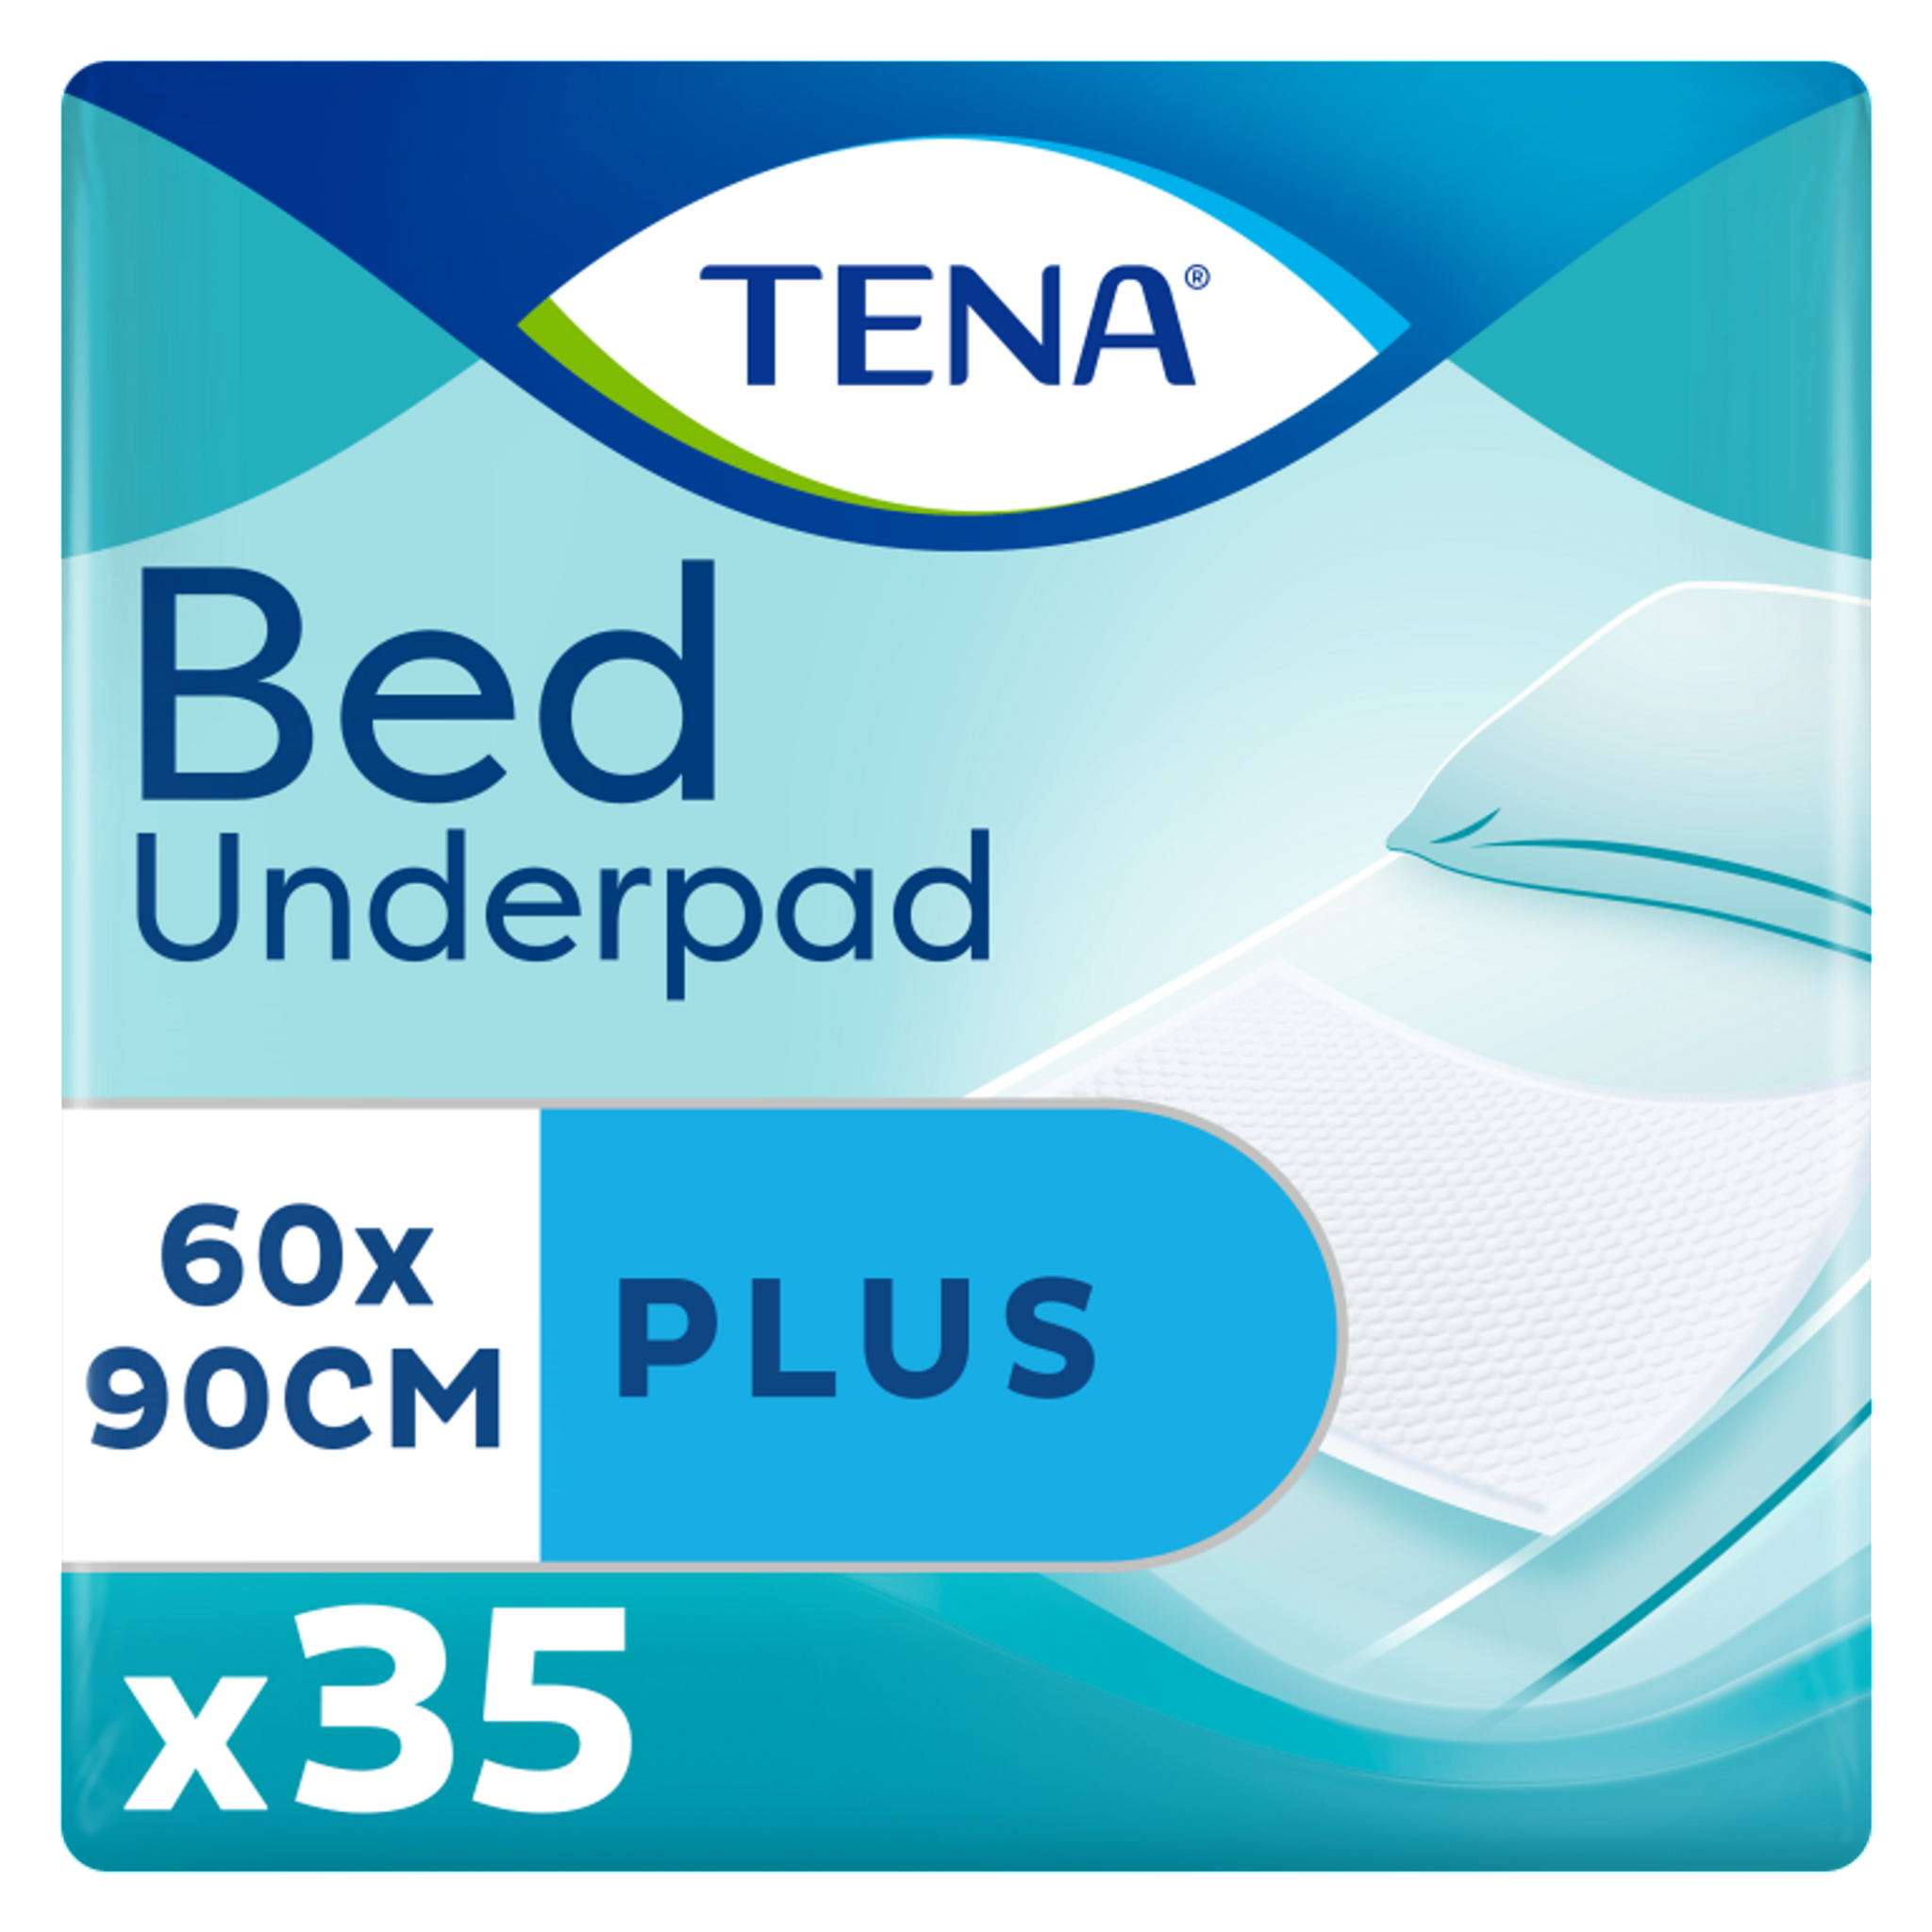 TENA Bed Plus 60 x 90 cm 35 stuks - 4 pakken